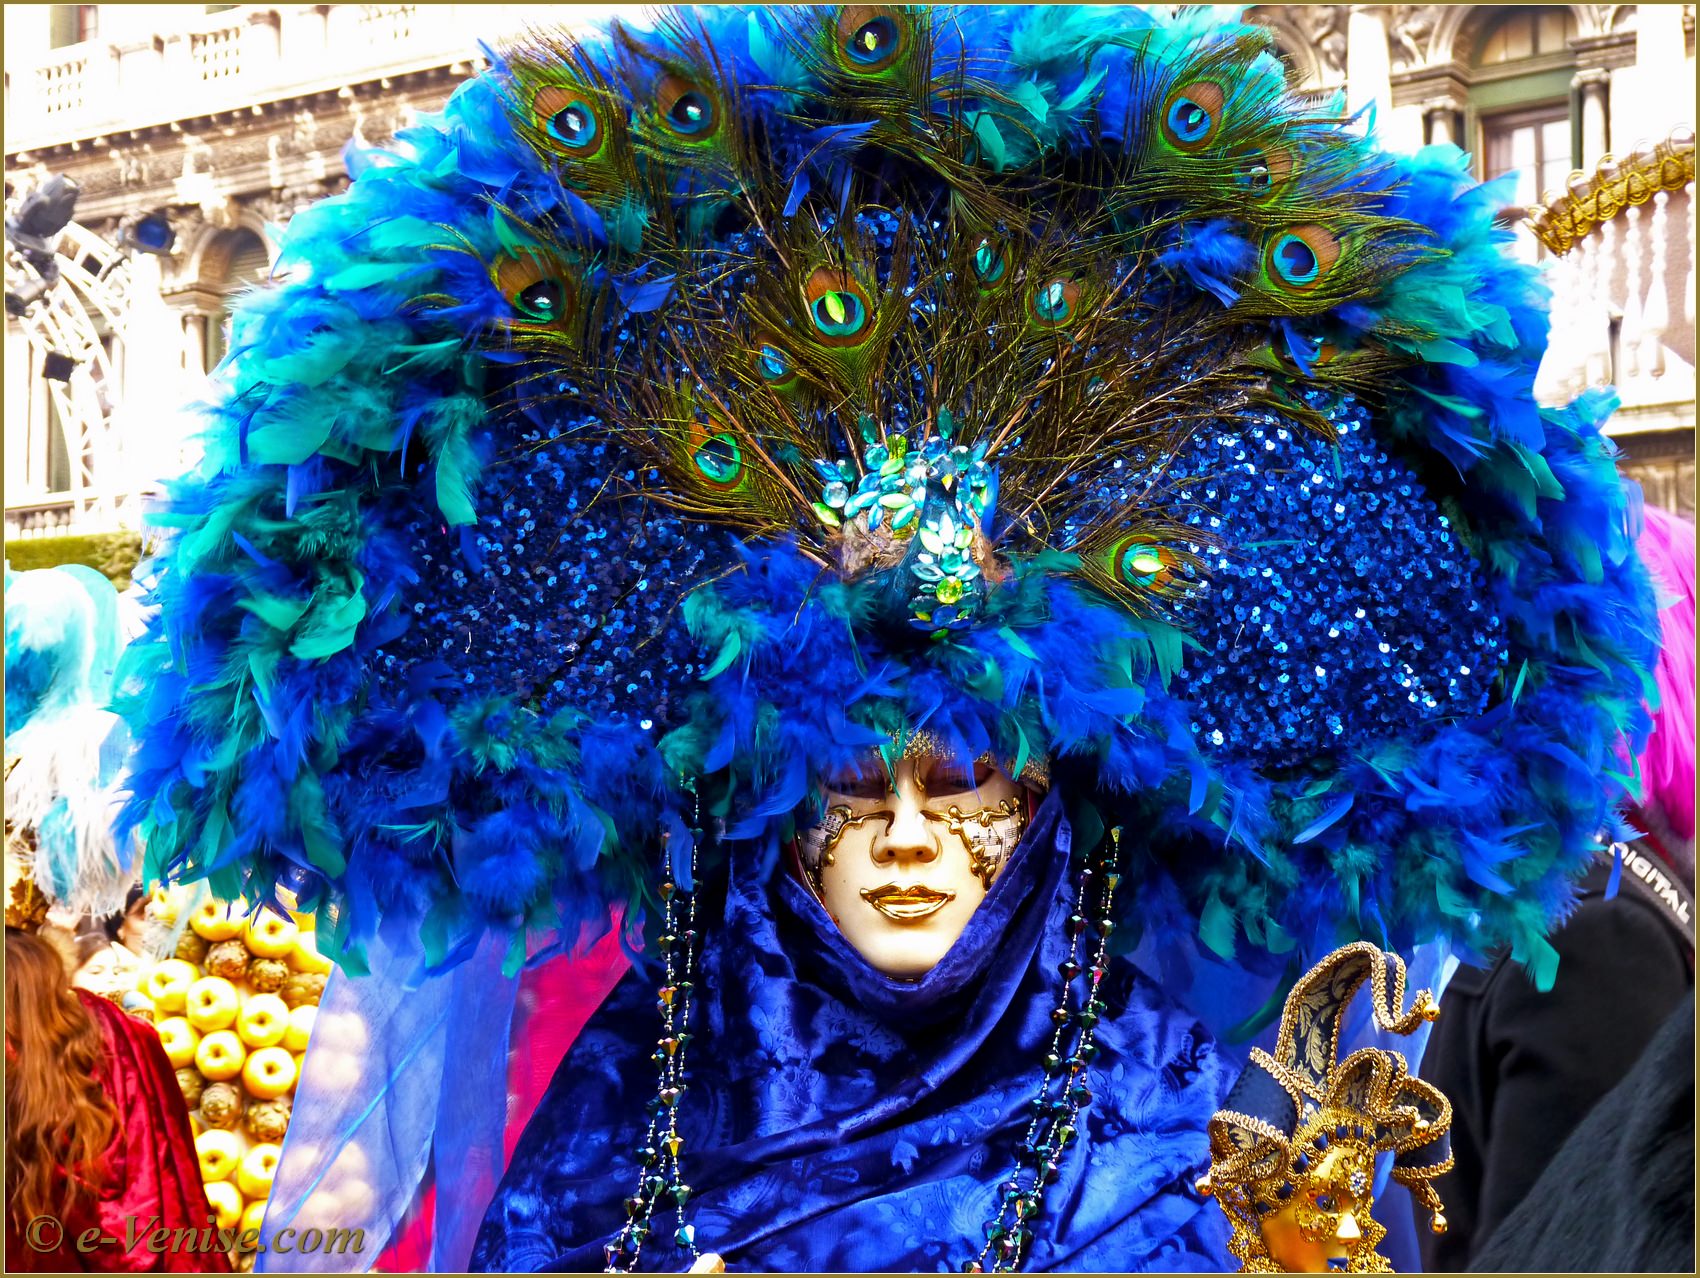 Одевали карнавал. Карнавал в Италии. Маскарад Венеции. Шемякин Венеция карнавал. Маска Венеция для карнавала.